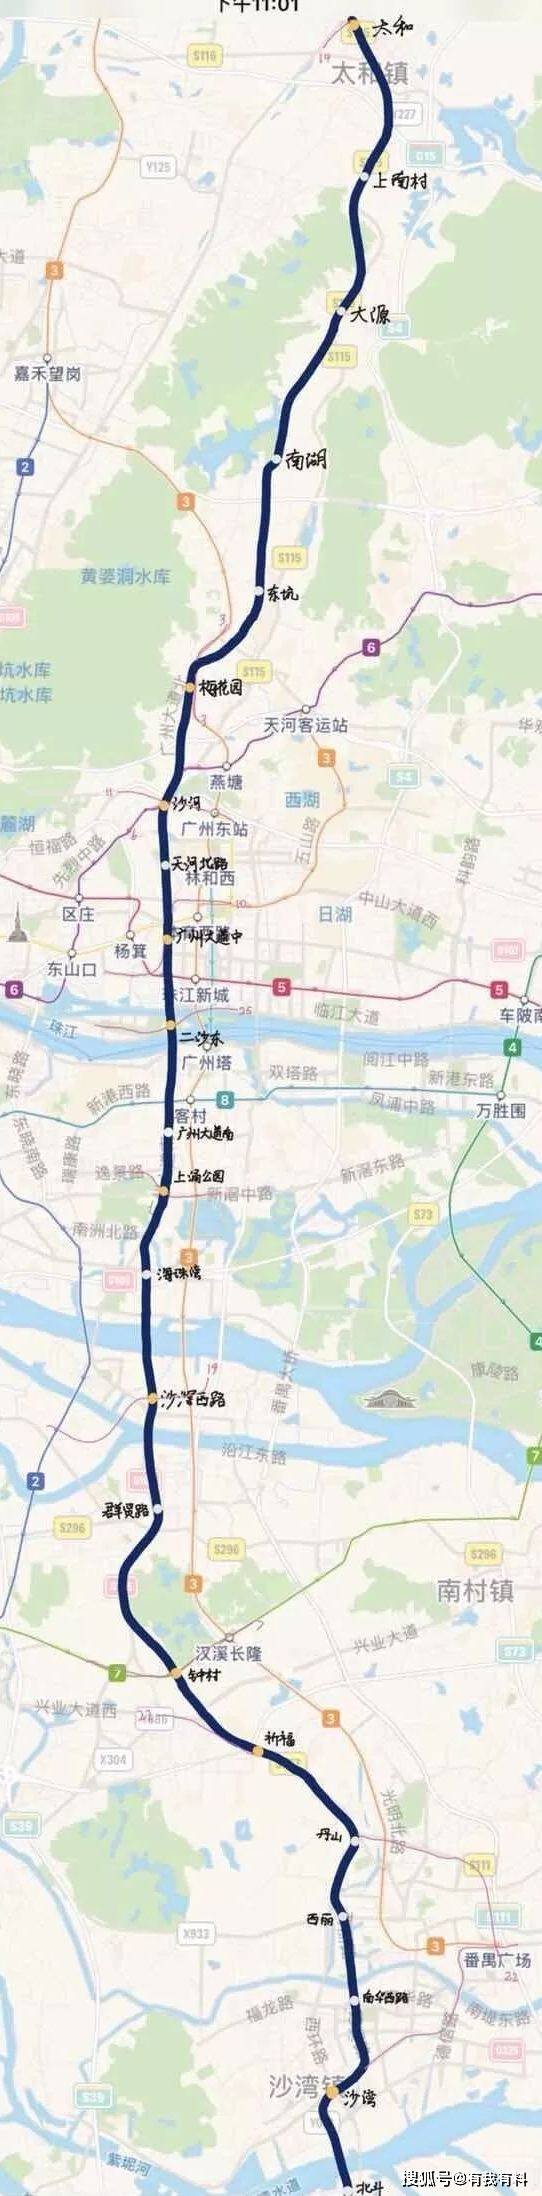 广州地铁26号线何时建设,地铁官方给答复了